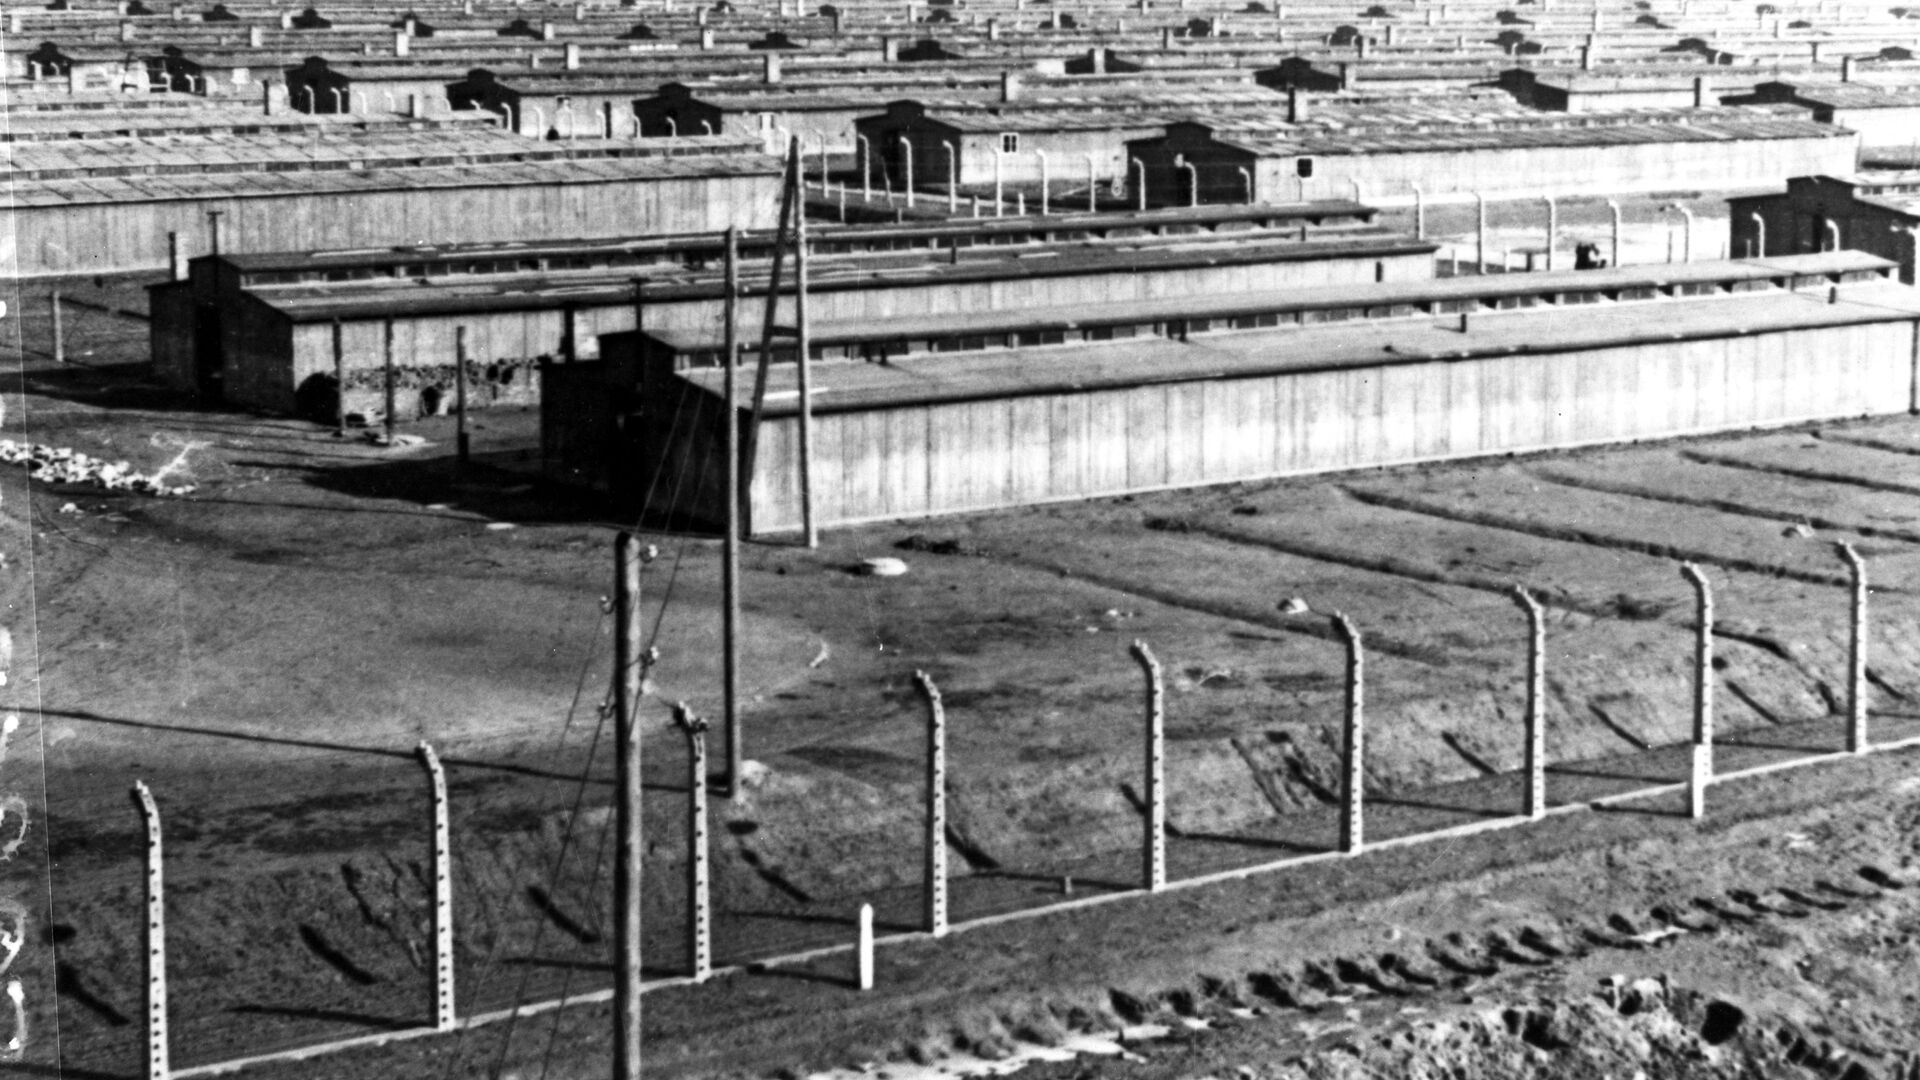 الحرب العالمية الثانية 1939 - 1945. ثكنات معسكر اعتقال أوشفيتز في ينايرم كانون الثاني 1945. يعد معسكر أوشفيتز أكبر معسكرات الإبادة النازية وأكثرها بقاء لفترة زمنية طويلة. لذا، فقد أصبح أحد الرموز الرئيسية للمحرقة (الهولوكوست). وفقًا لوثائق محكمة نورمبرغ، قُتل 2.8 مليون شخص في المعسكر خلال فترة 1941-1945، 90٪ منهم كانوا من اليهود. - سبوتنيك عربي, 1920, 17.07.2021